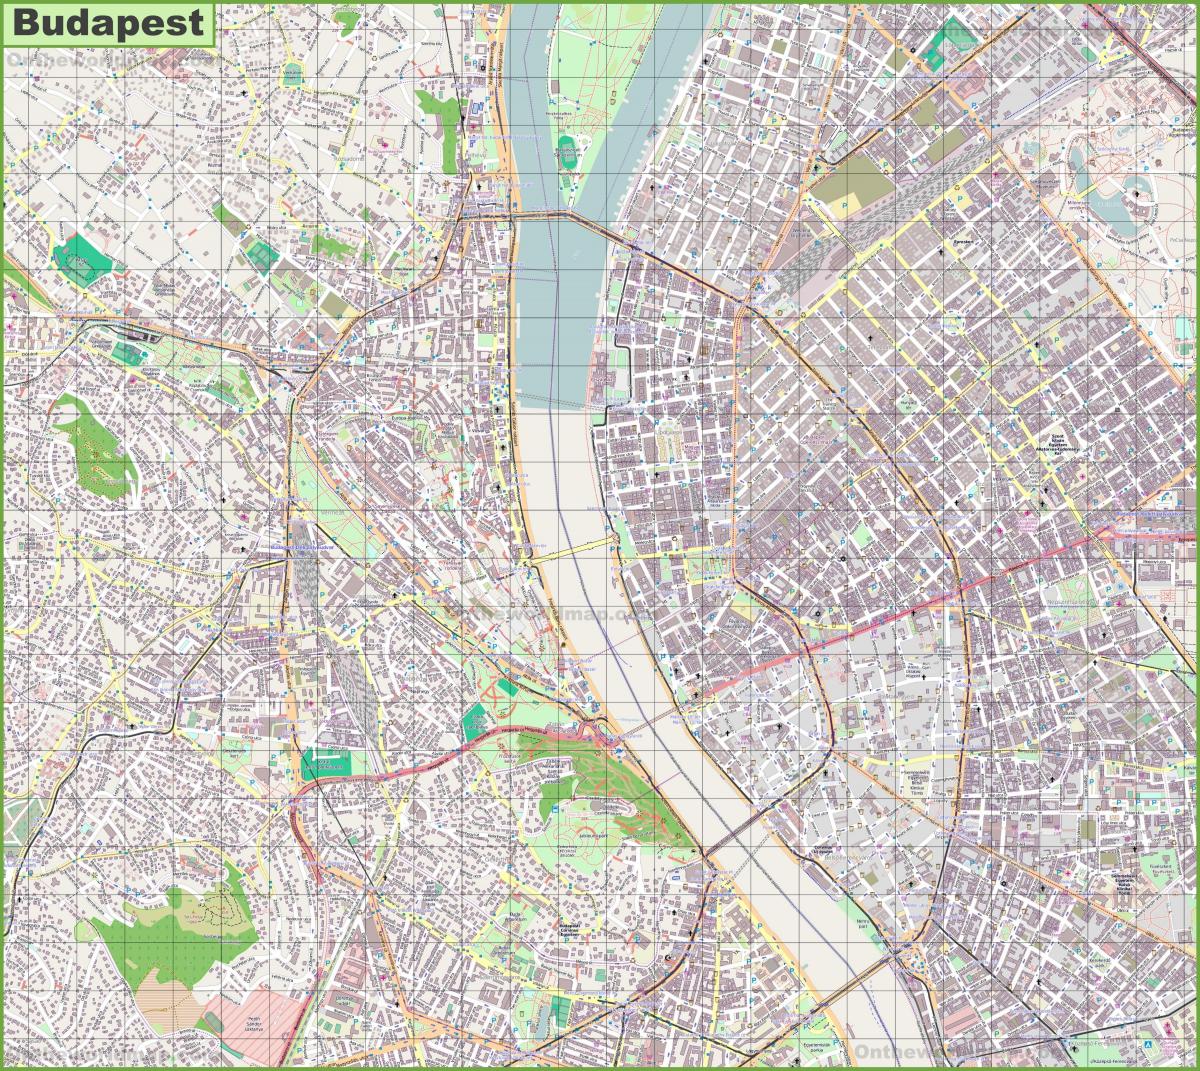 ulična mapa u budimpešti mađarske